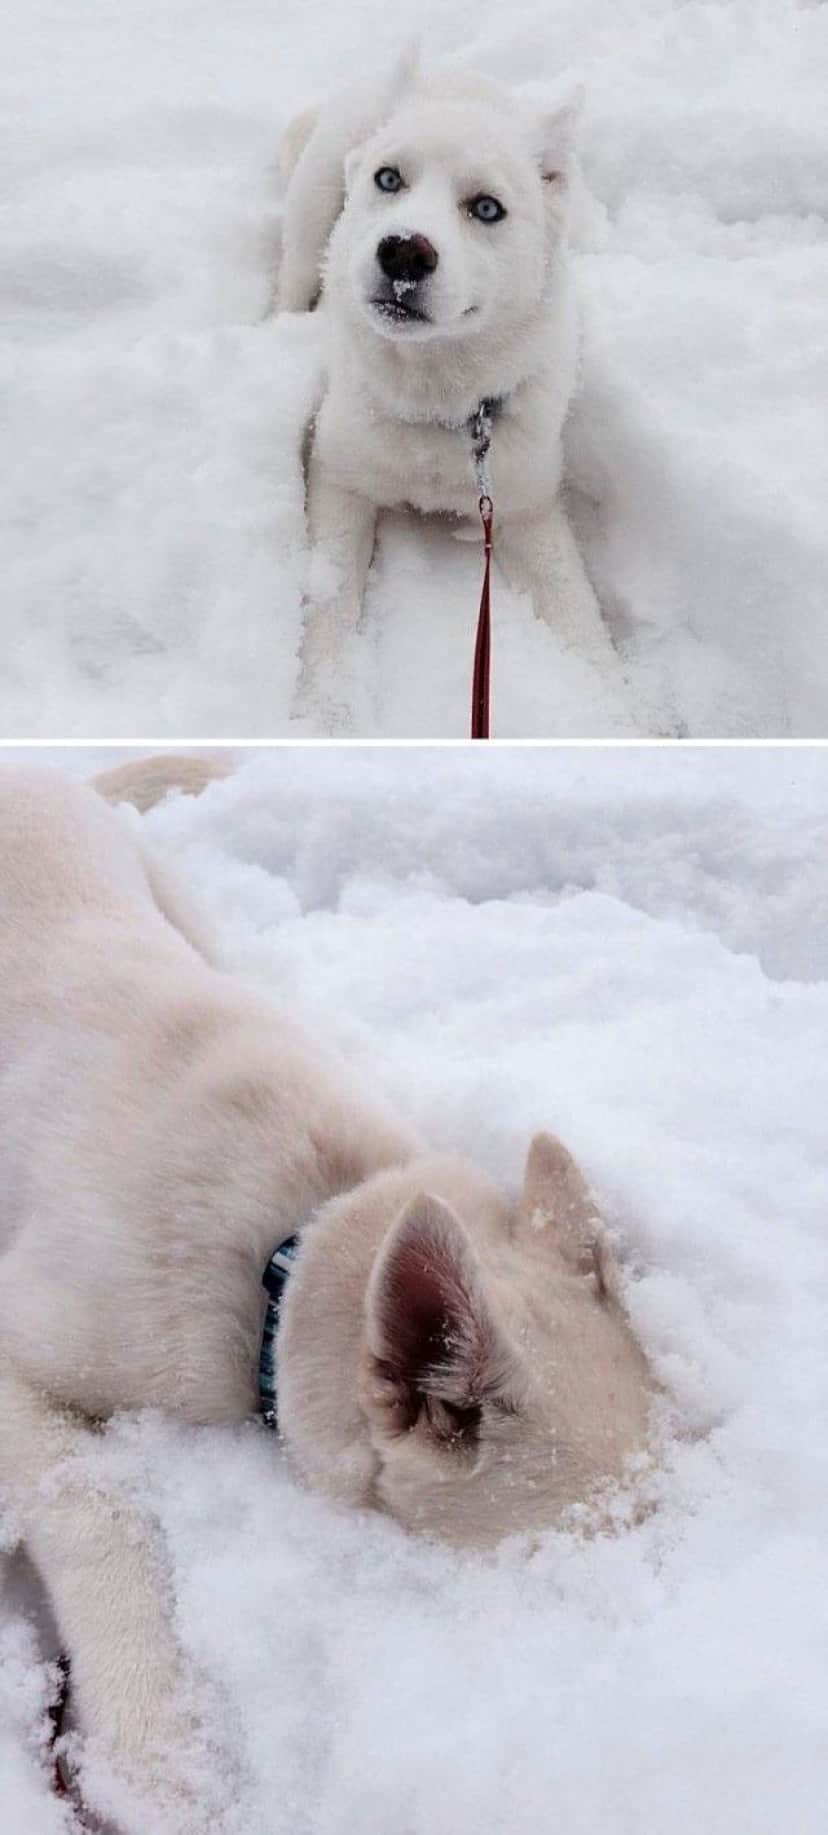 寒い 冷たい おもしろい 初めて雪を見た動物たちの反応を詰め合わせでお楽しみください カラパイア